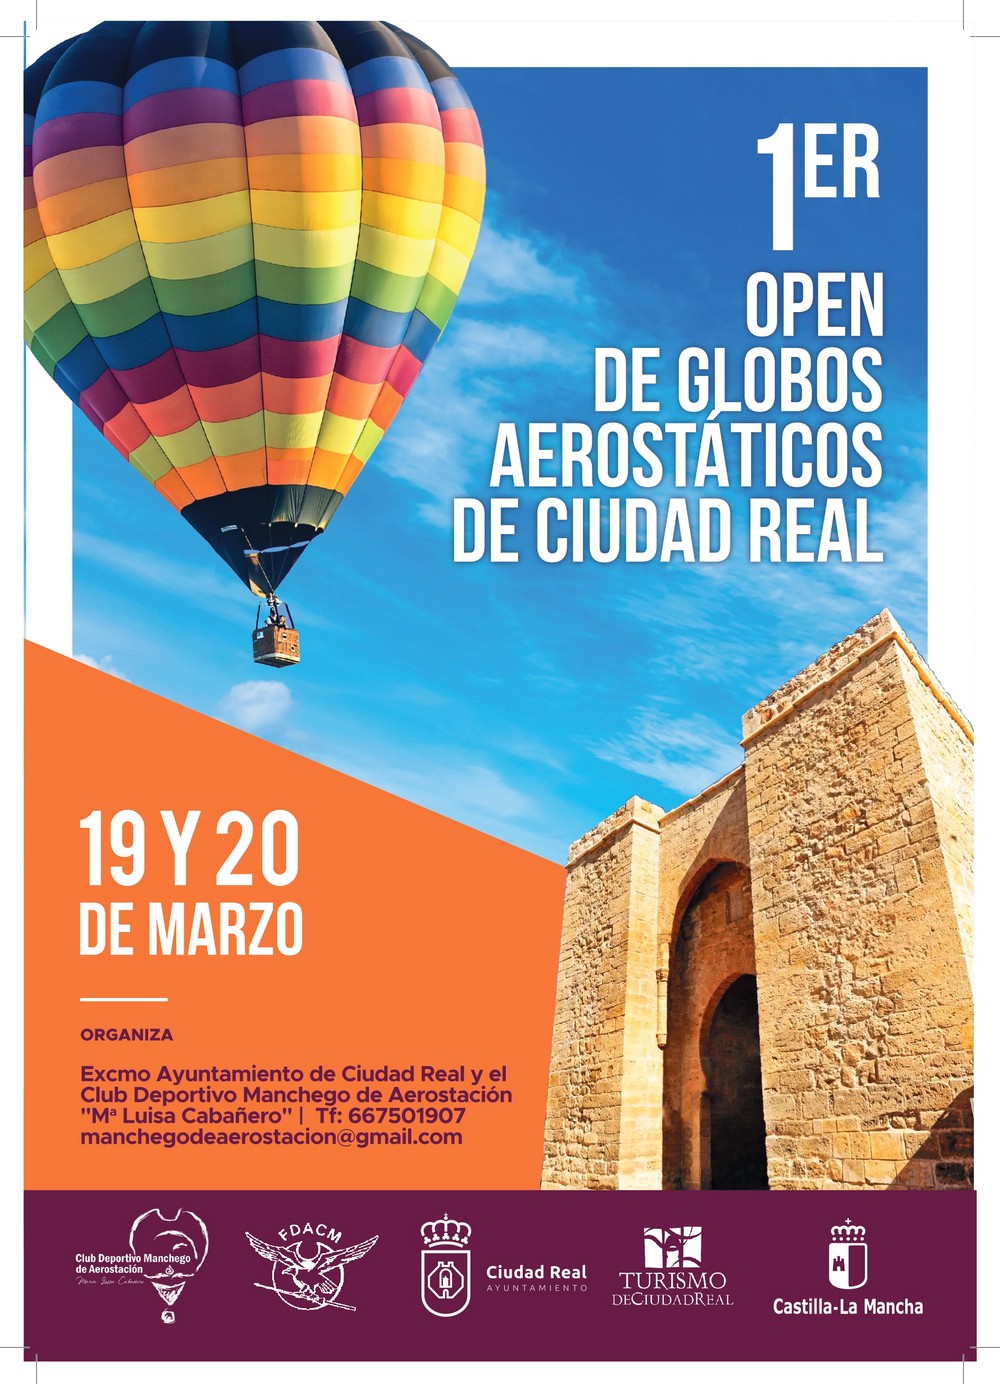 Open de globos aerostáticos de Ciudad Real